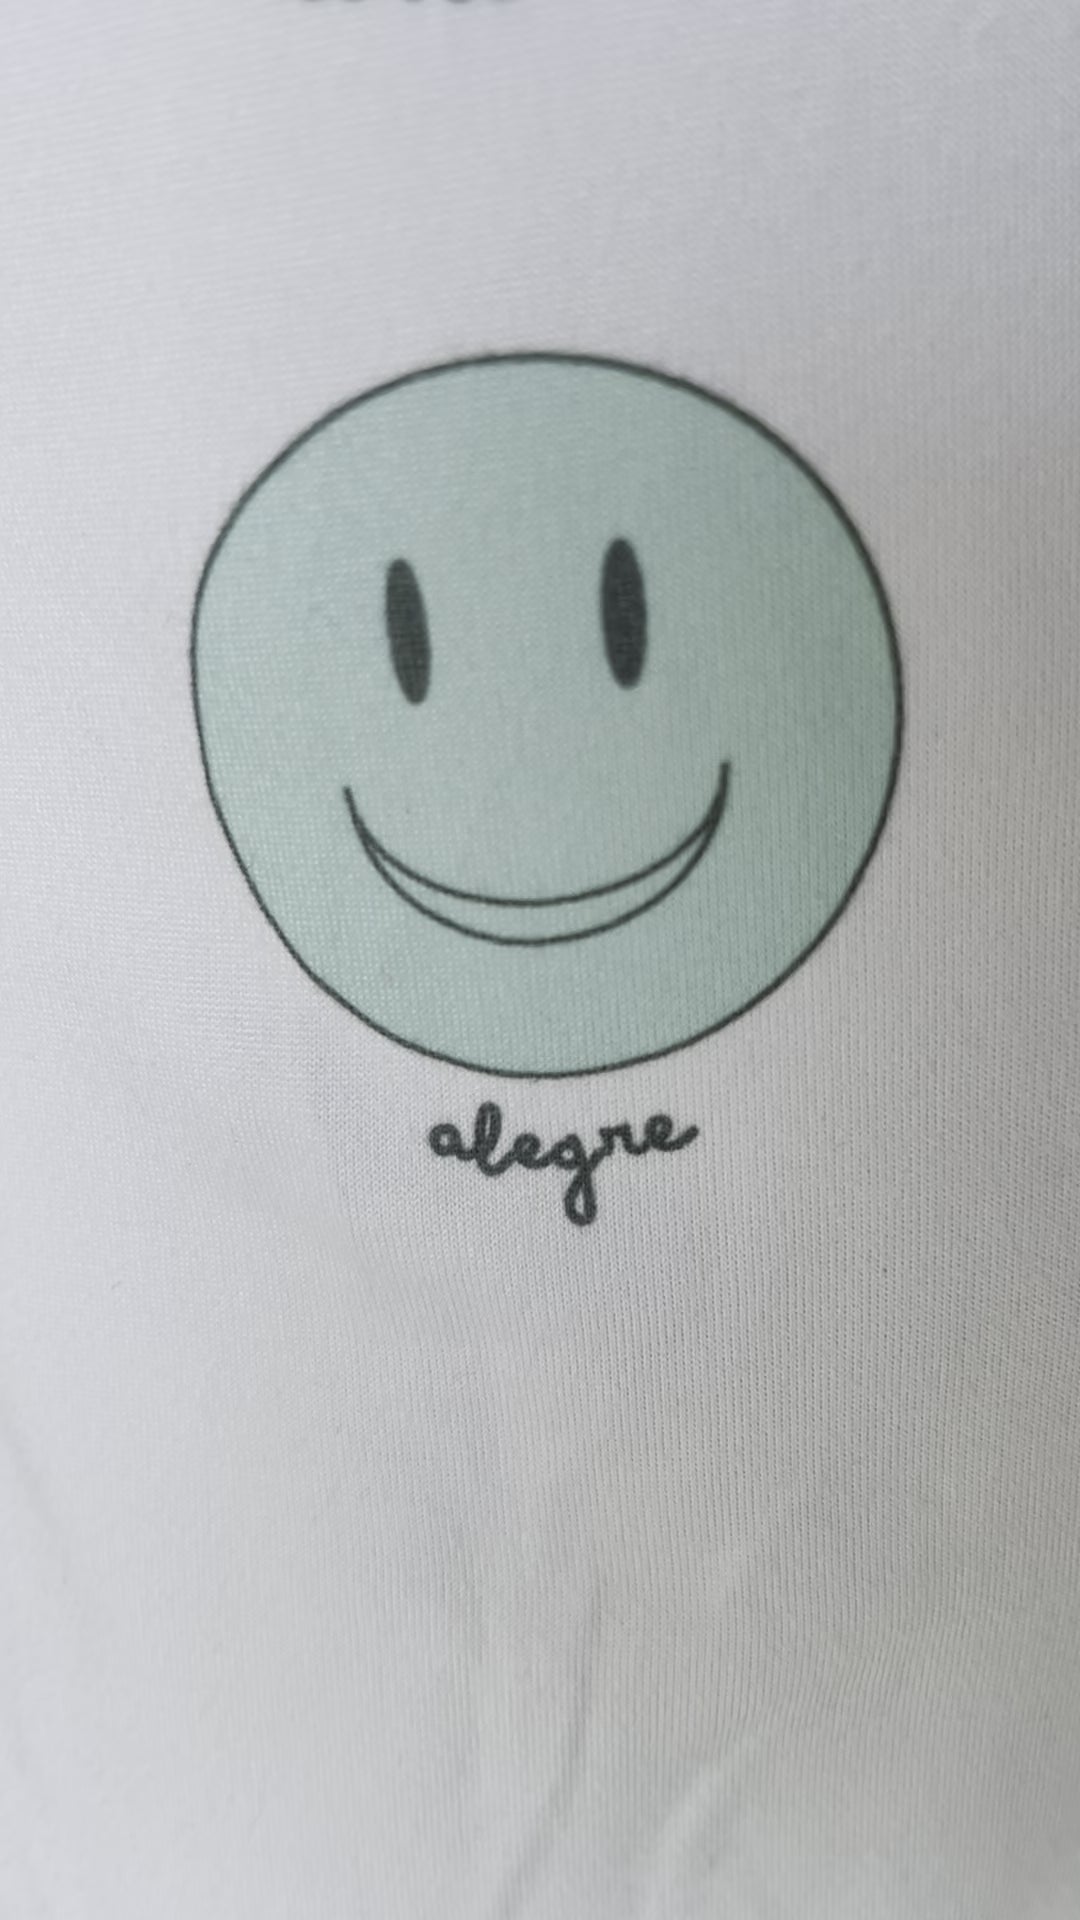 detalle del diseño de caritas felices de la camiseta